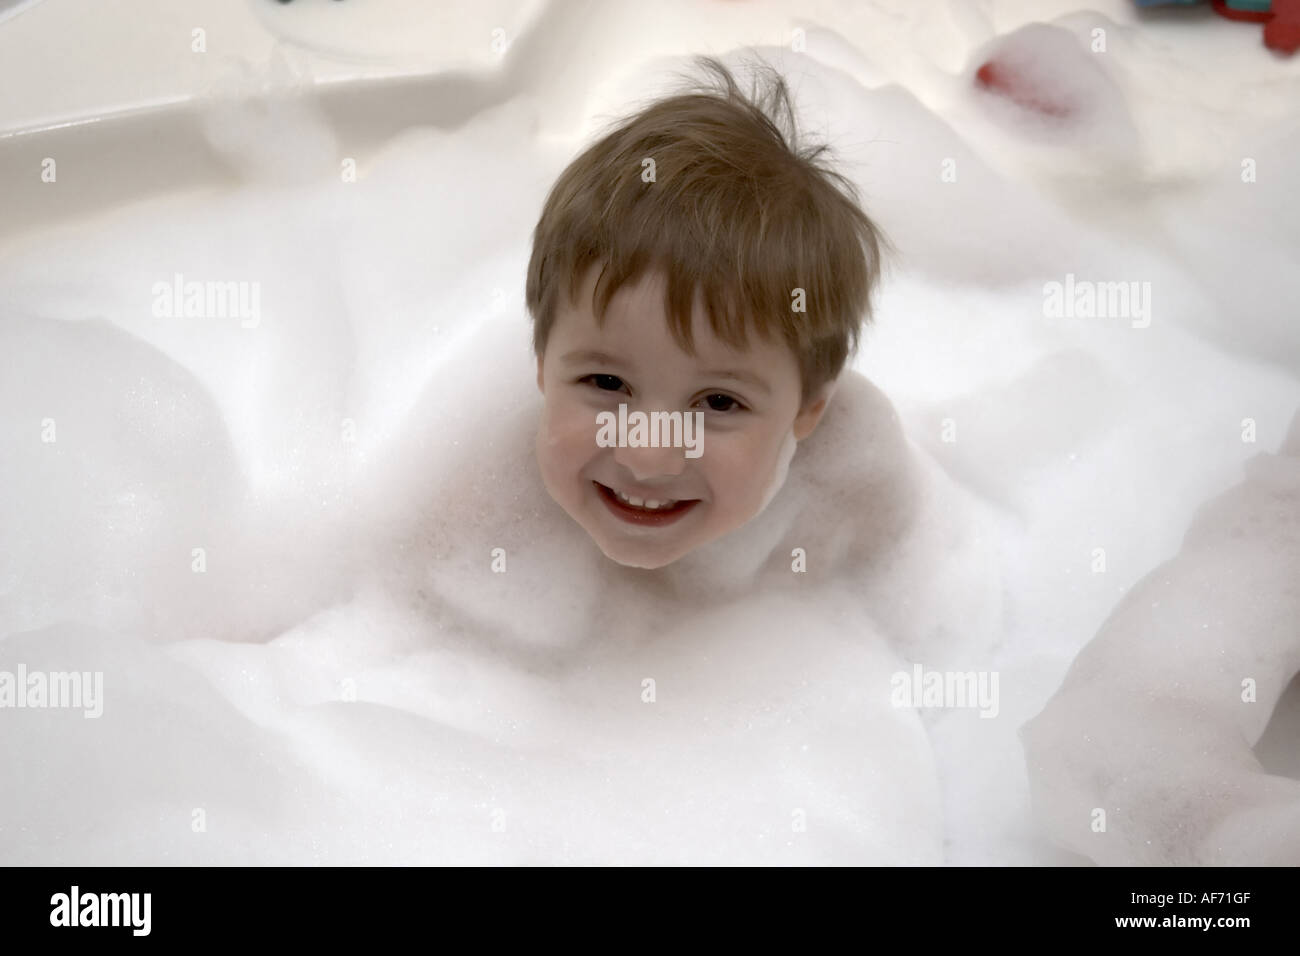 Jolie jeune garçon enfant smiling in spa baignoire jacuzzi ou en mousse  CJWH drôle amusant humour bande dessinée Photo Stock - Alamy